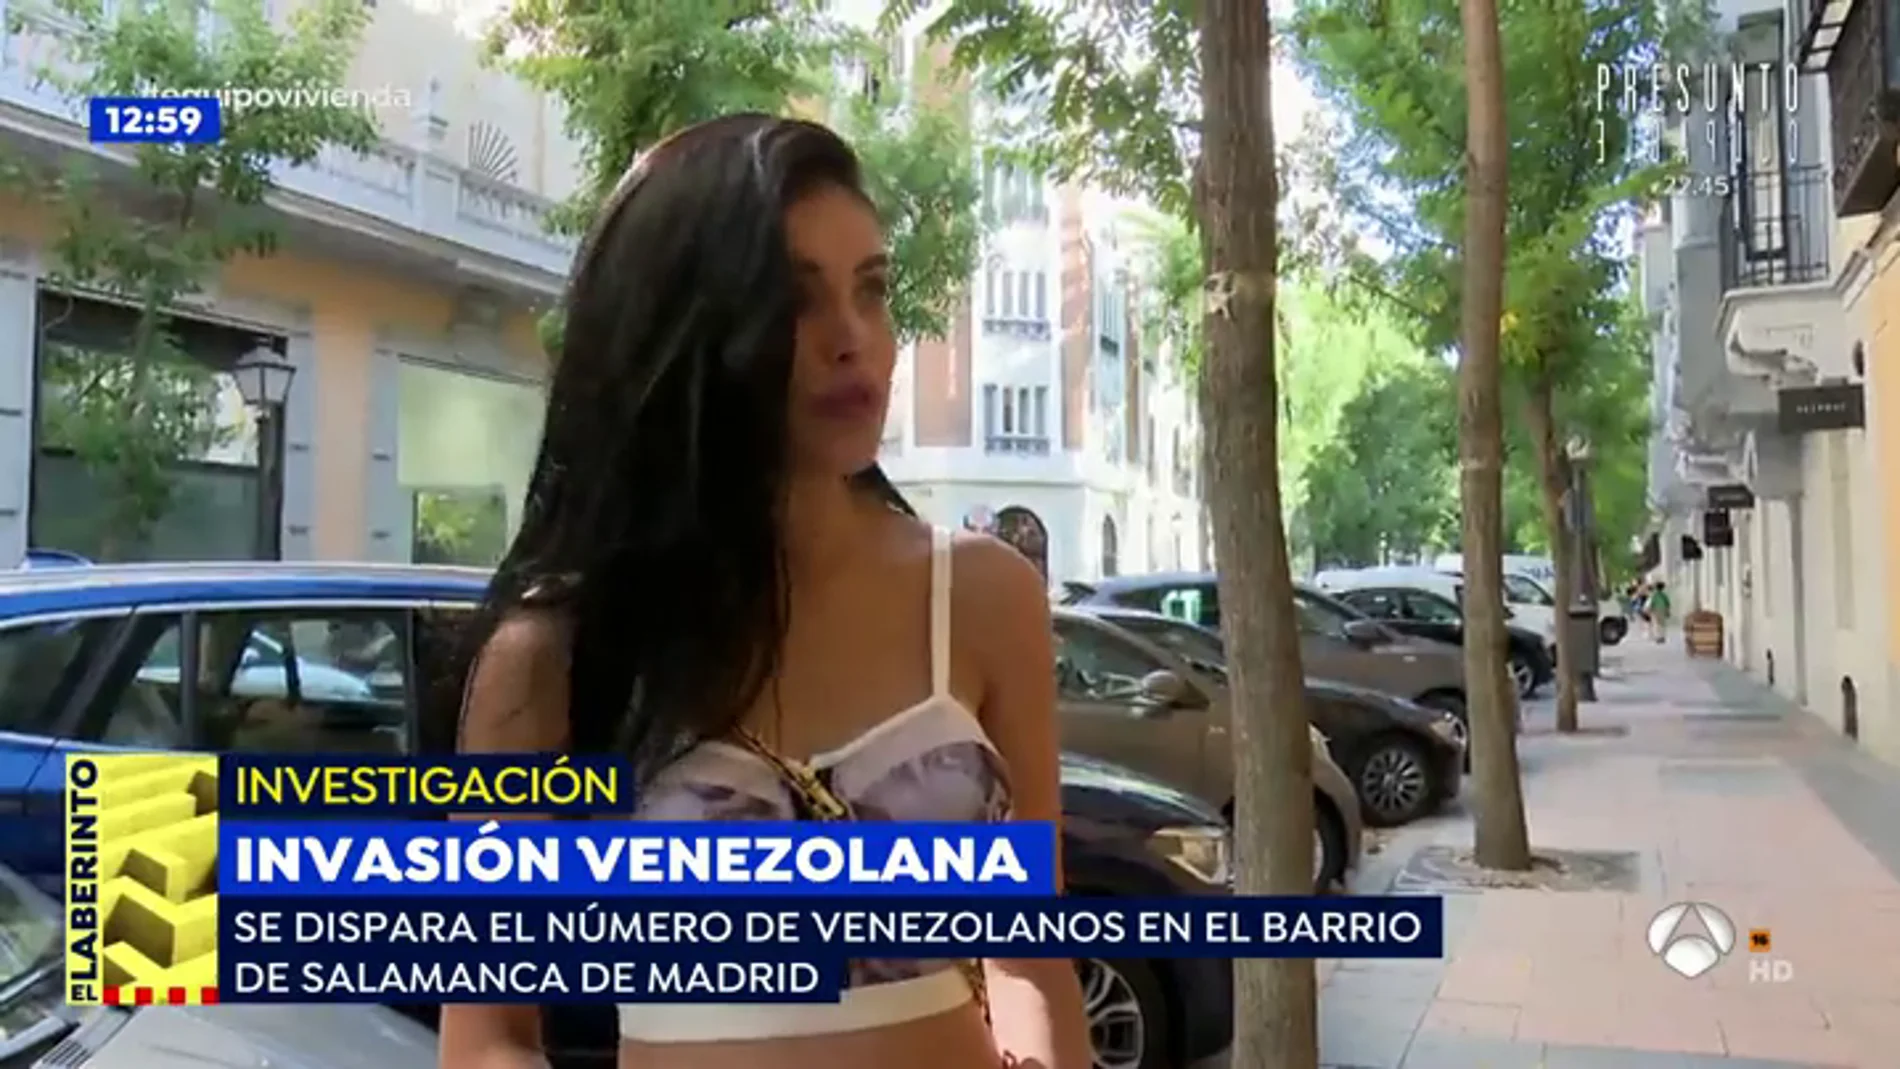 El barrio de Salamanca, la 'little Venezuela' de Madrid, miles de venezolanos se asientan en una de las zonas más caras de España